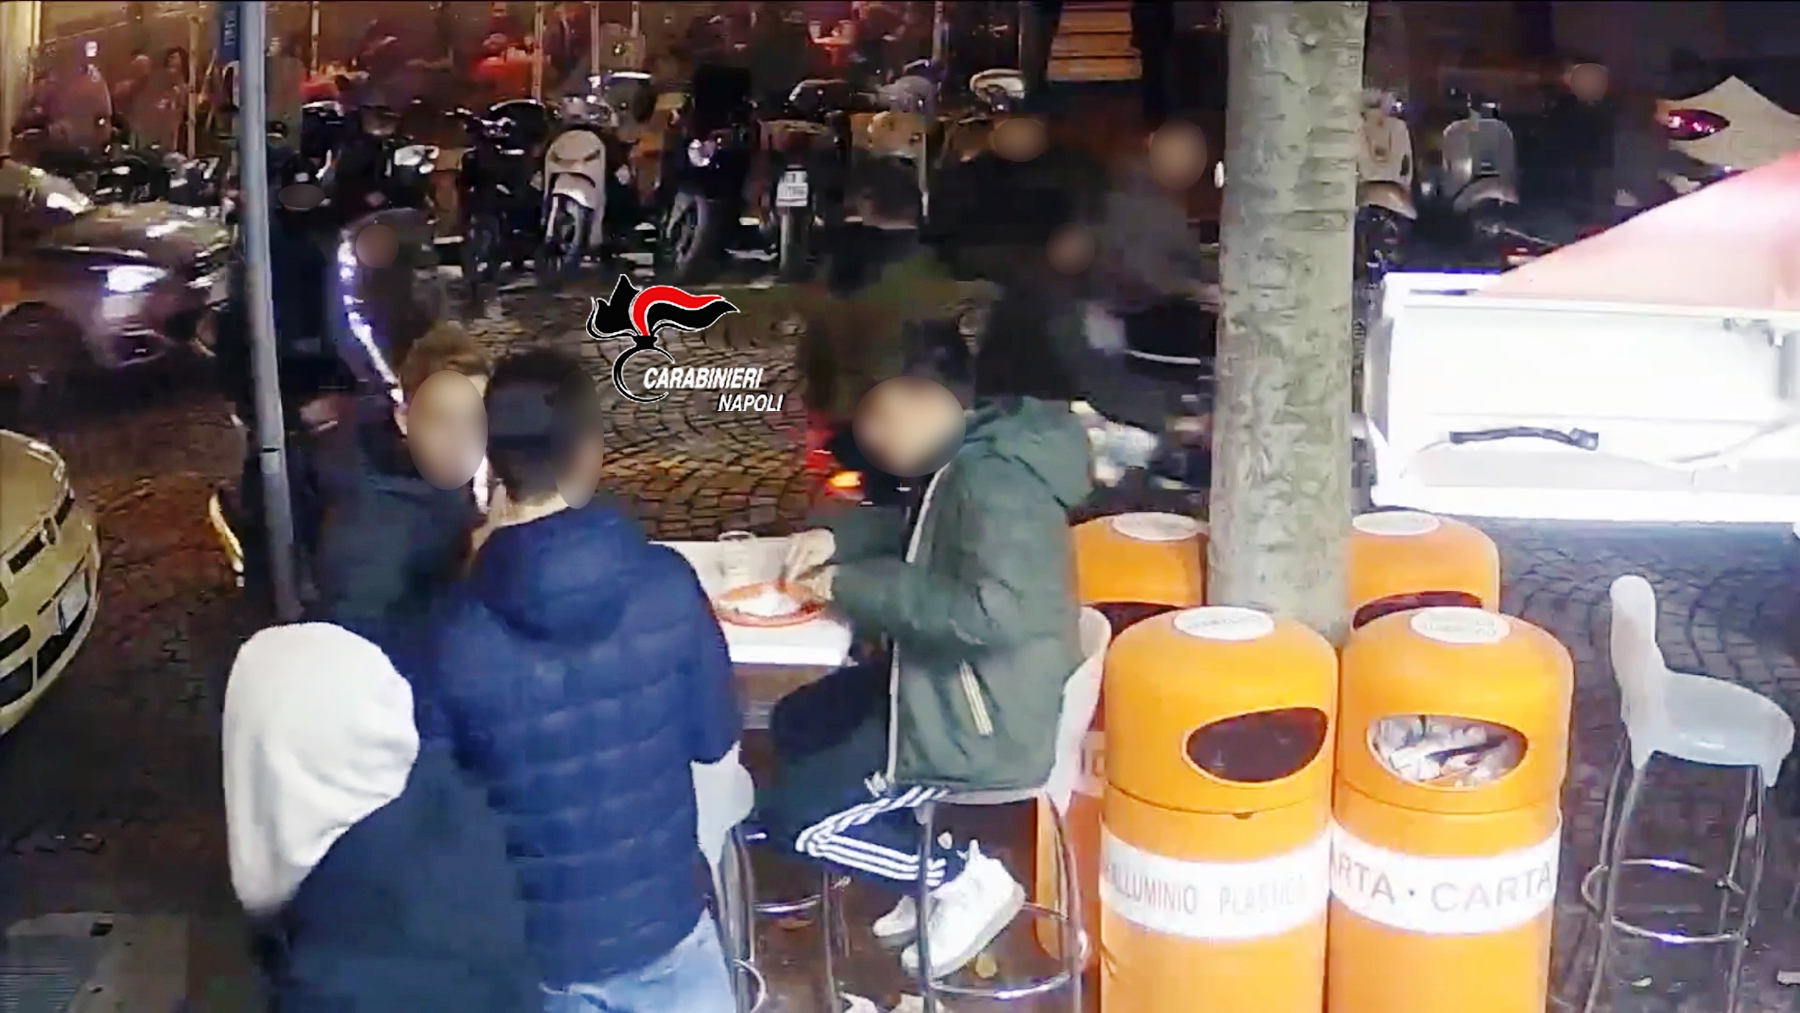   Vomero, ragazzi accoltellati in piazza per uno sguardo di troppo: denunciato il responsabile e altri 16 ragazzi